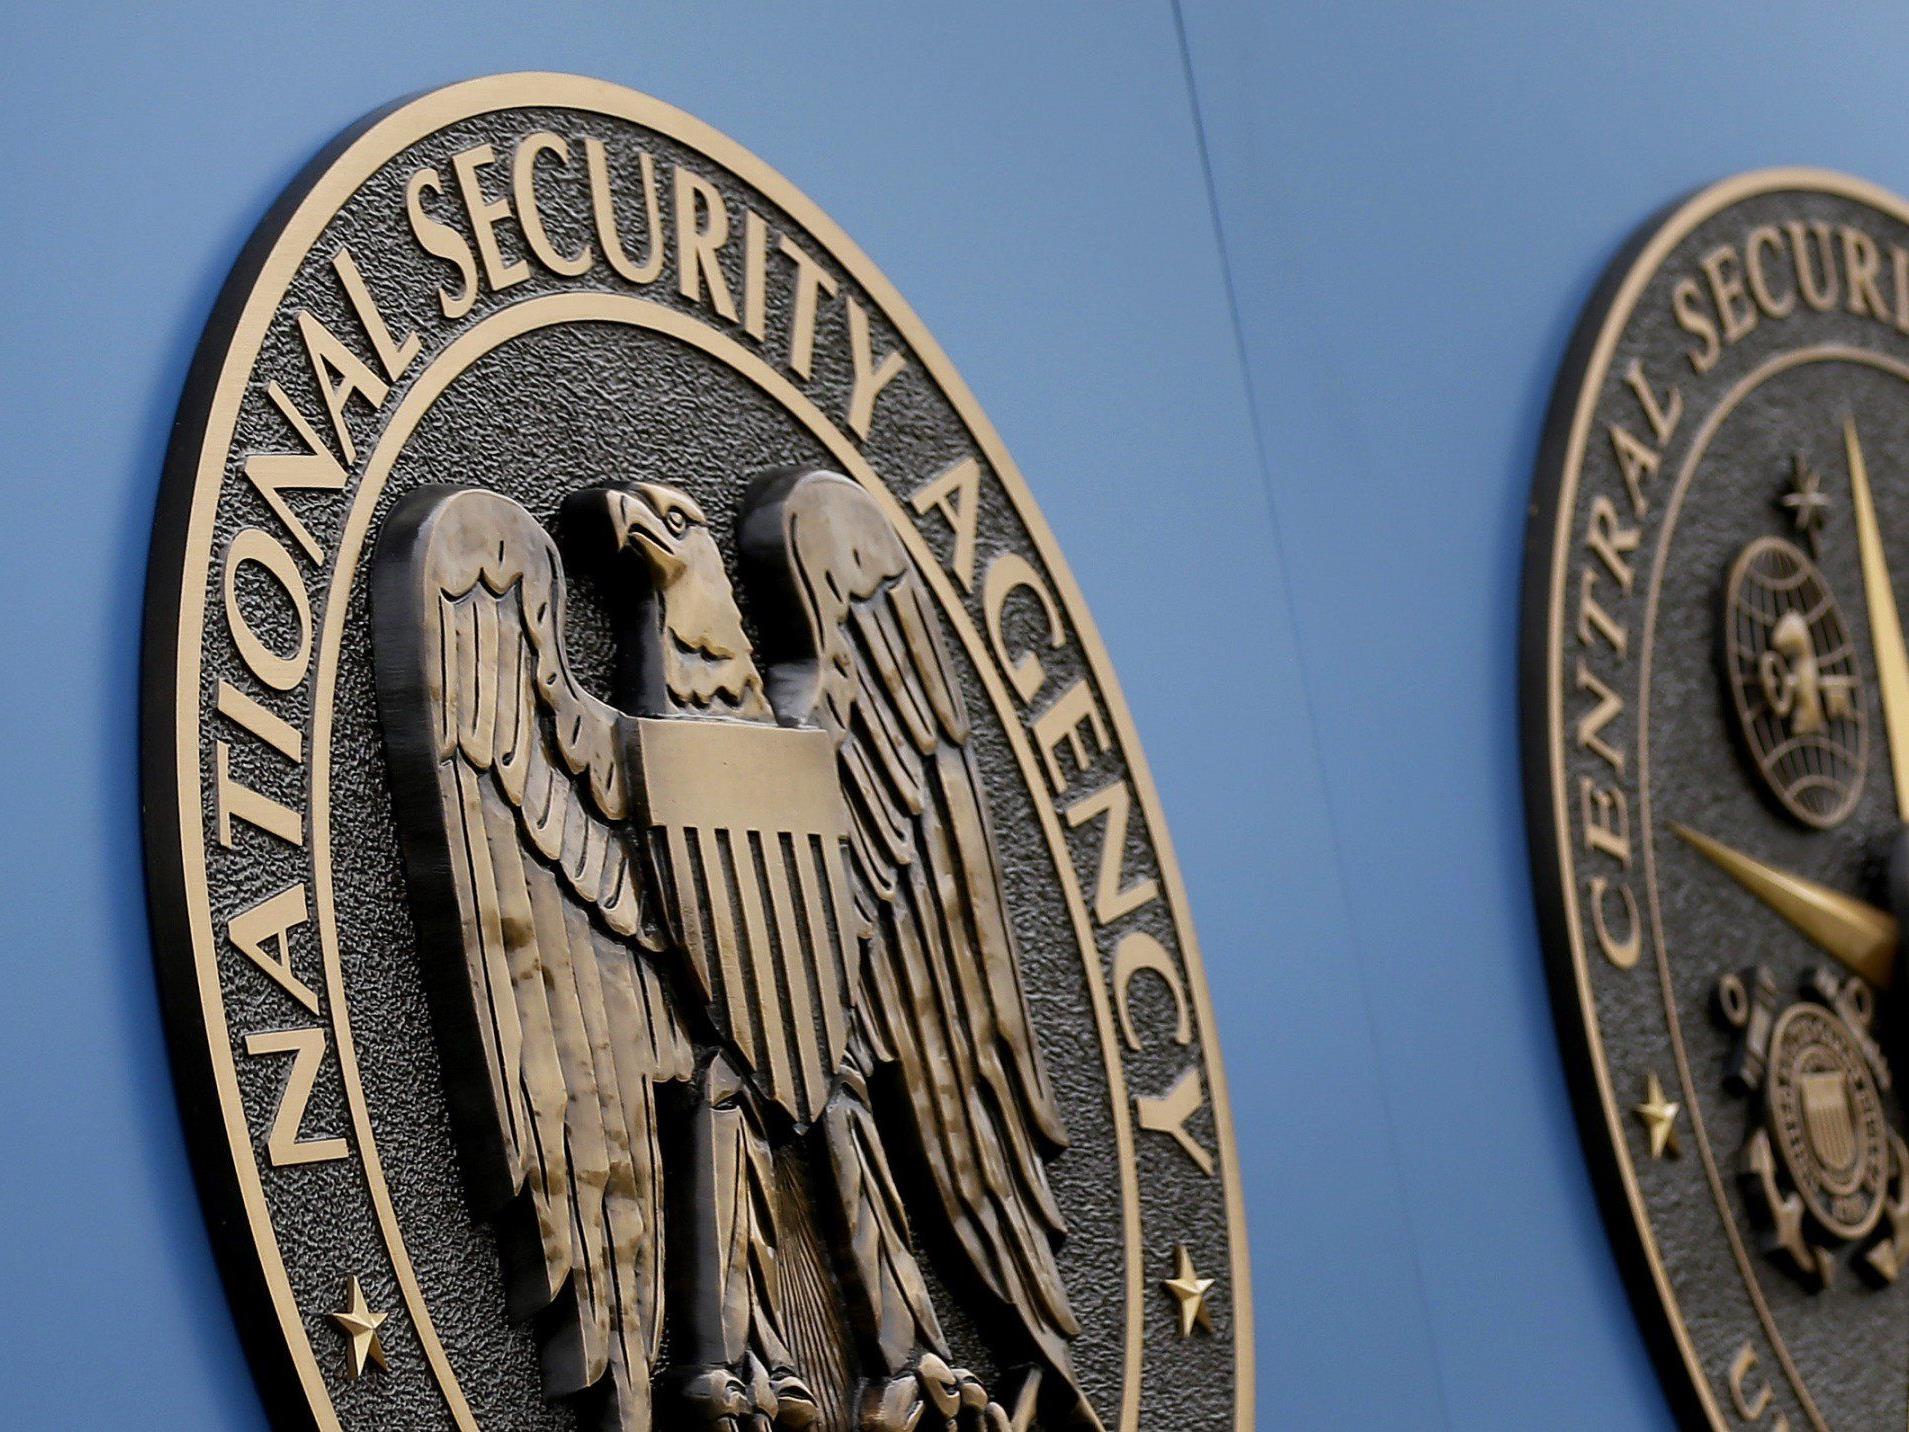 Zugriff der National Security Agency (NSA) auf Millionen von Daten.